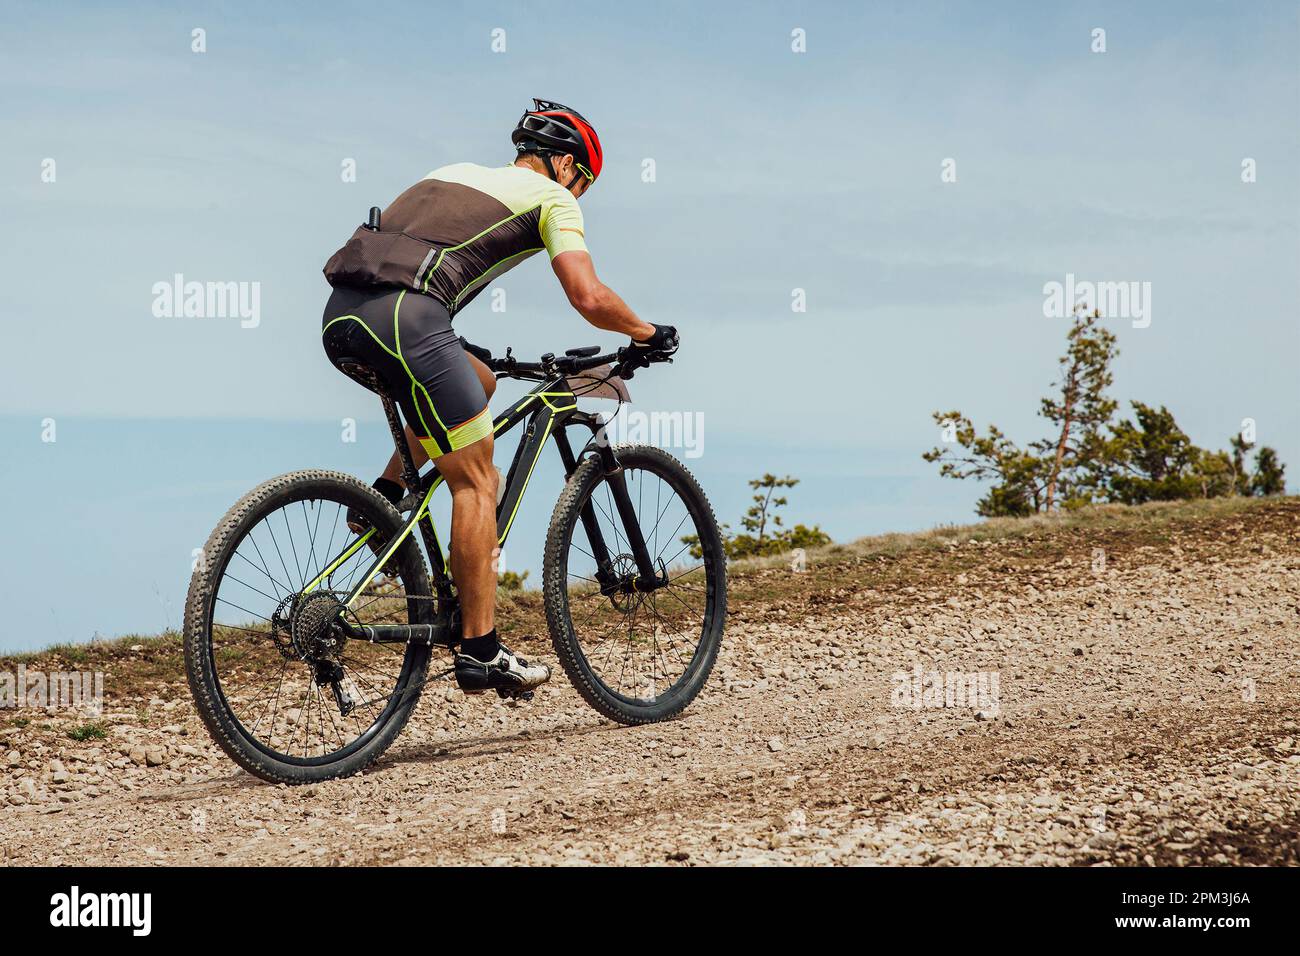 athlète cycliste en montée, vélo sur route de gravier, compétition cycliste Banque D'Images